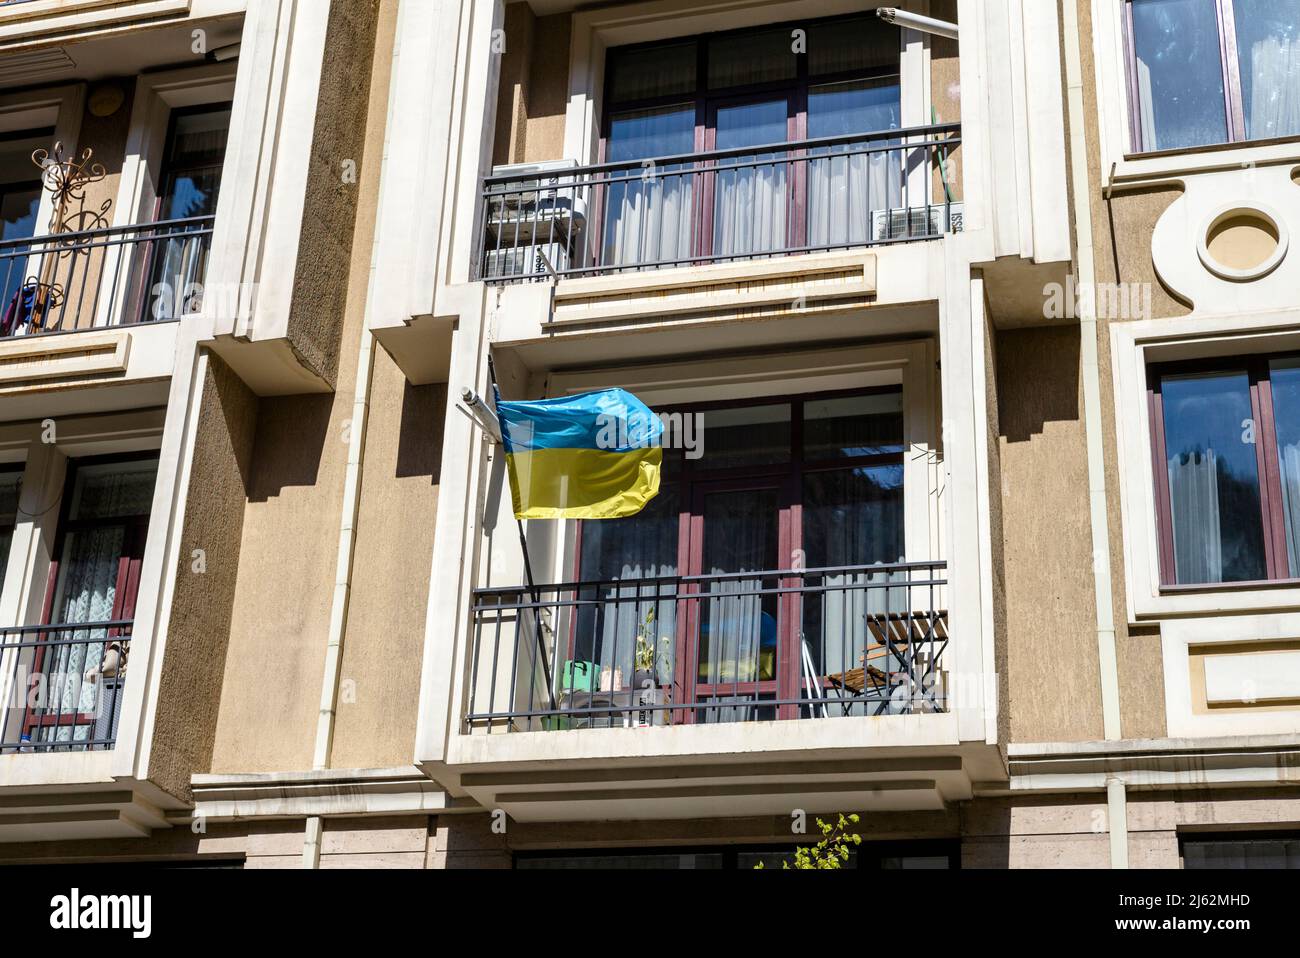 Fenster mit ukrainischer Flagge, Tiflis April 2022. Der Krieg in der Ukraine hat eine riesige Welle der Solidarität in Georgien ausgelöst. Stockfoto